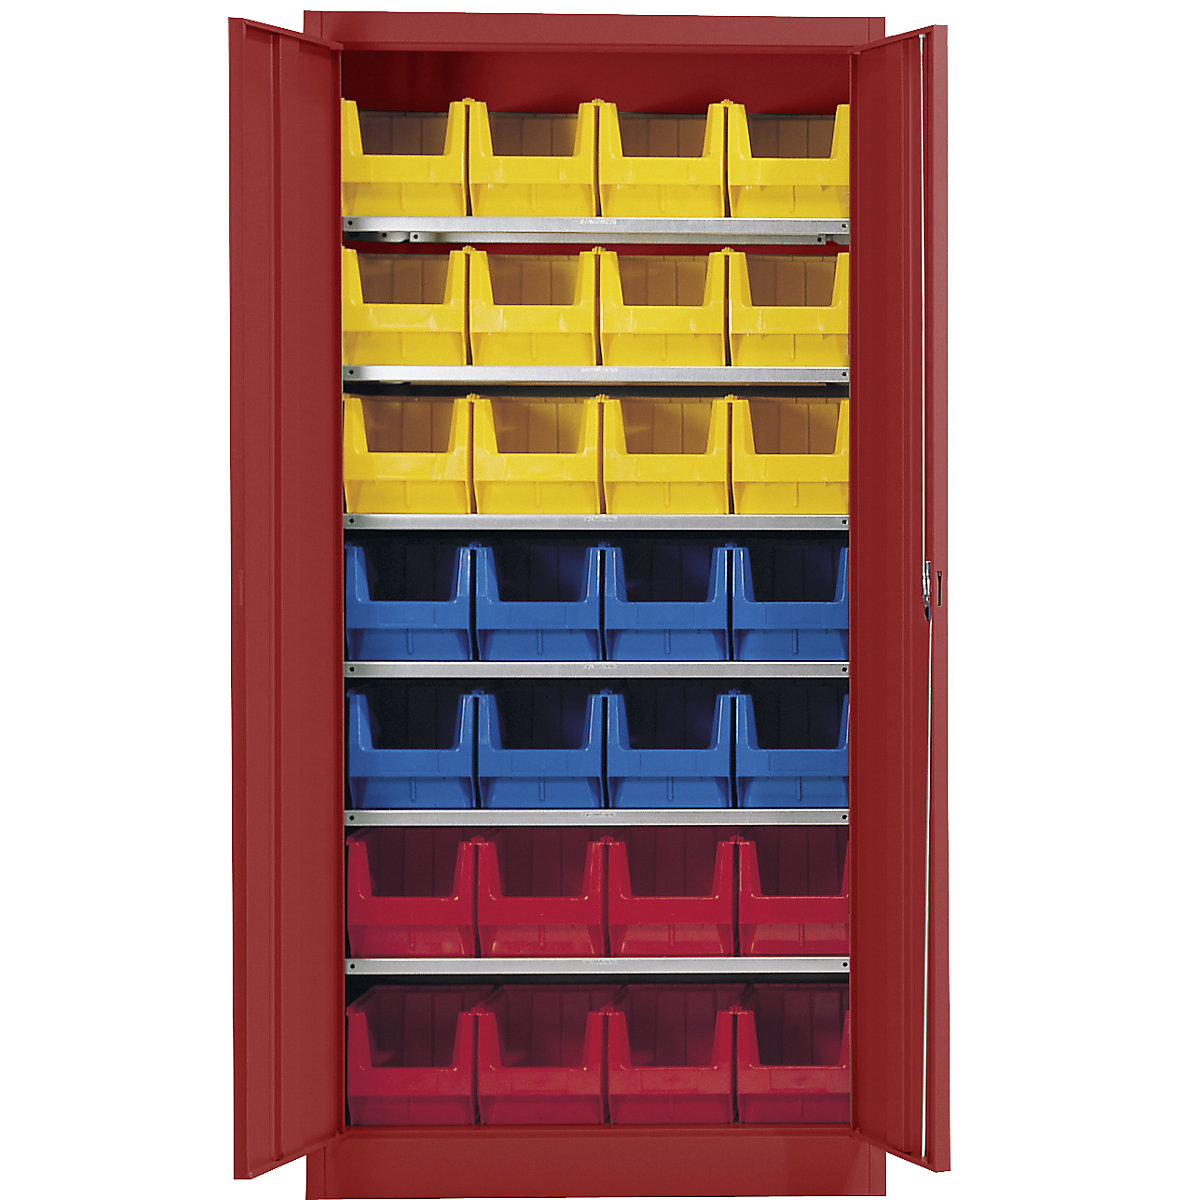 Skladová skříň, jednobarevná – mauser, s 28 přepravkami s viditelným obsahem, 6 polic, červená-1